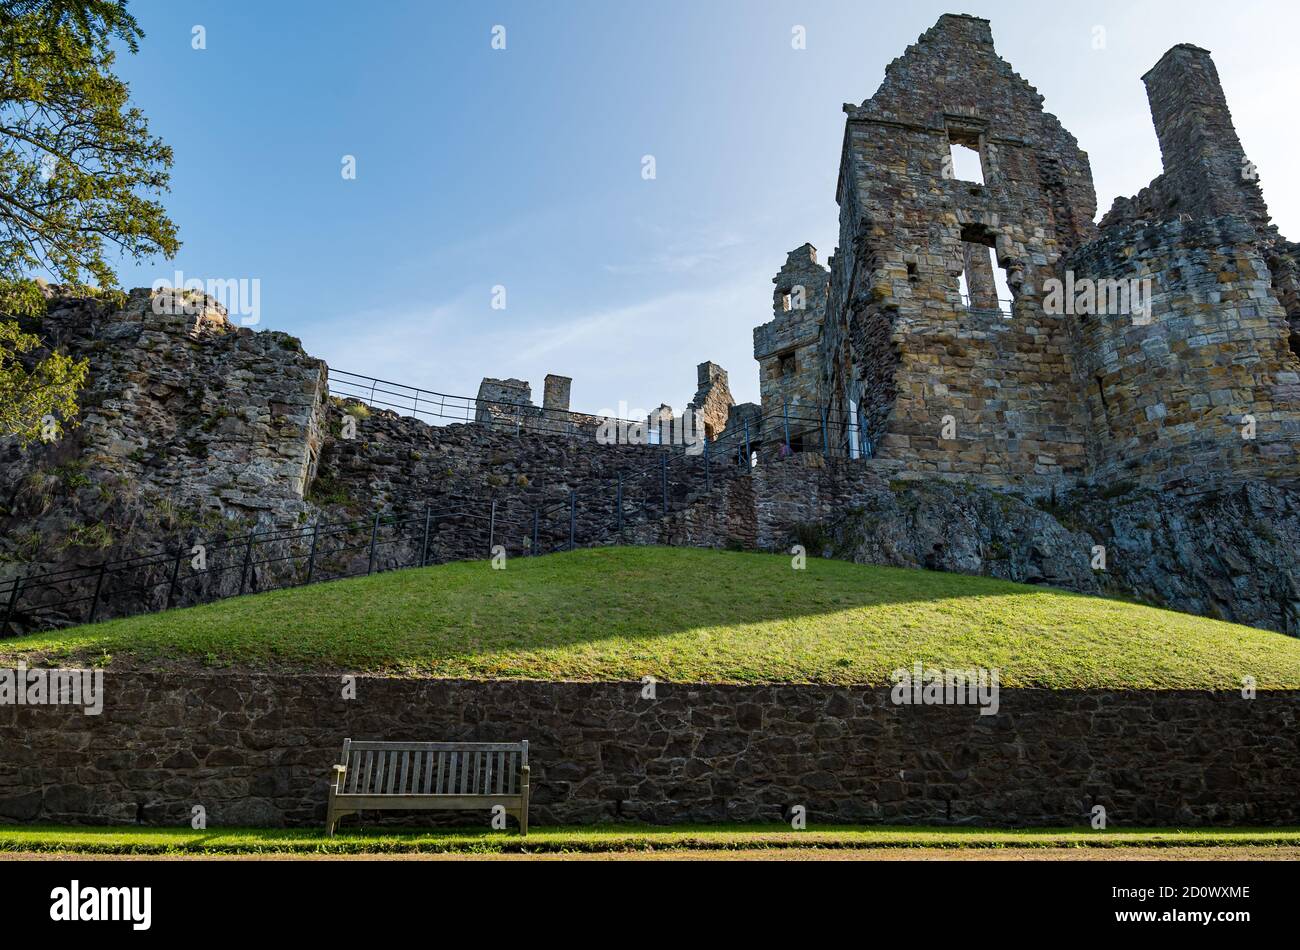 Blick auf die Ruinen einer mittelalterlichen Burg aus dem 13. Jahrhundert, Dirleton Castle, East Lothian, Schottland, Großbritannien Stockfoto